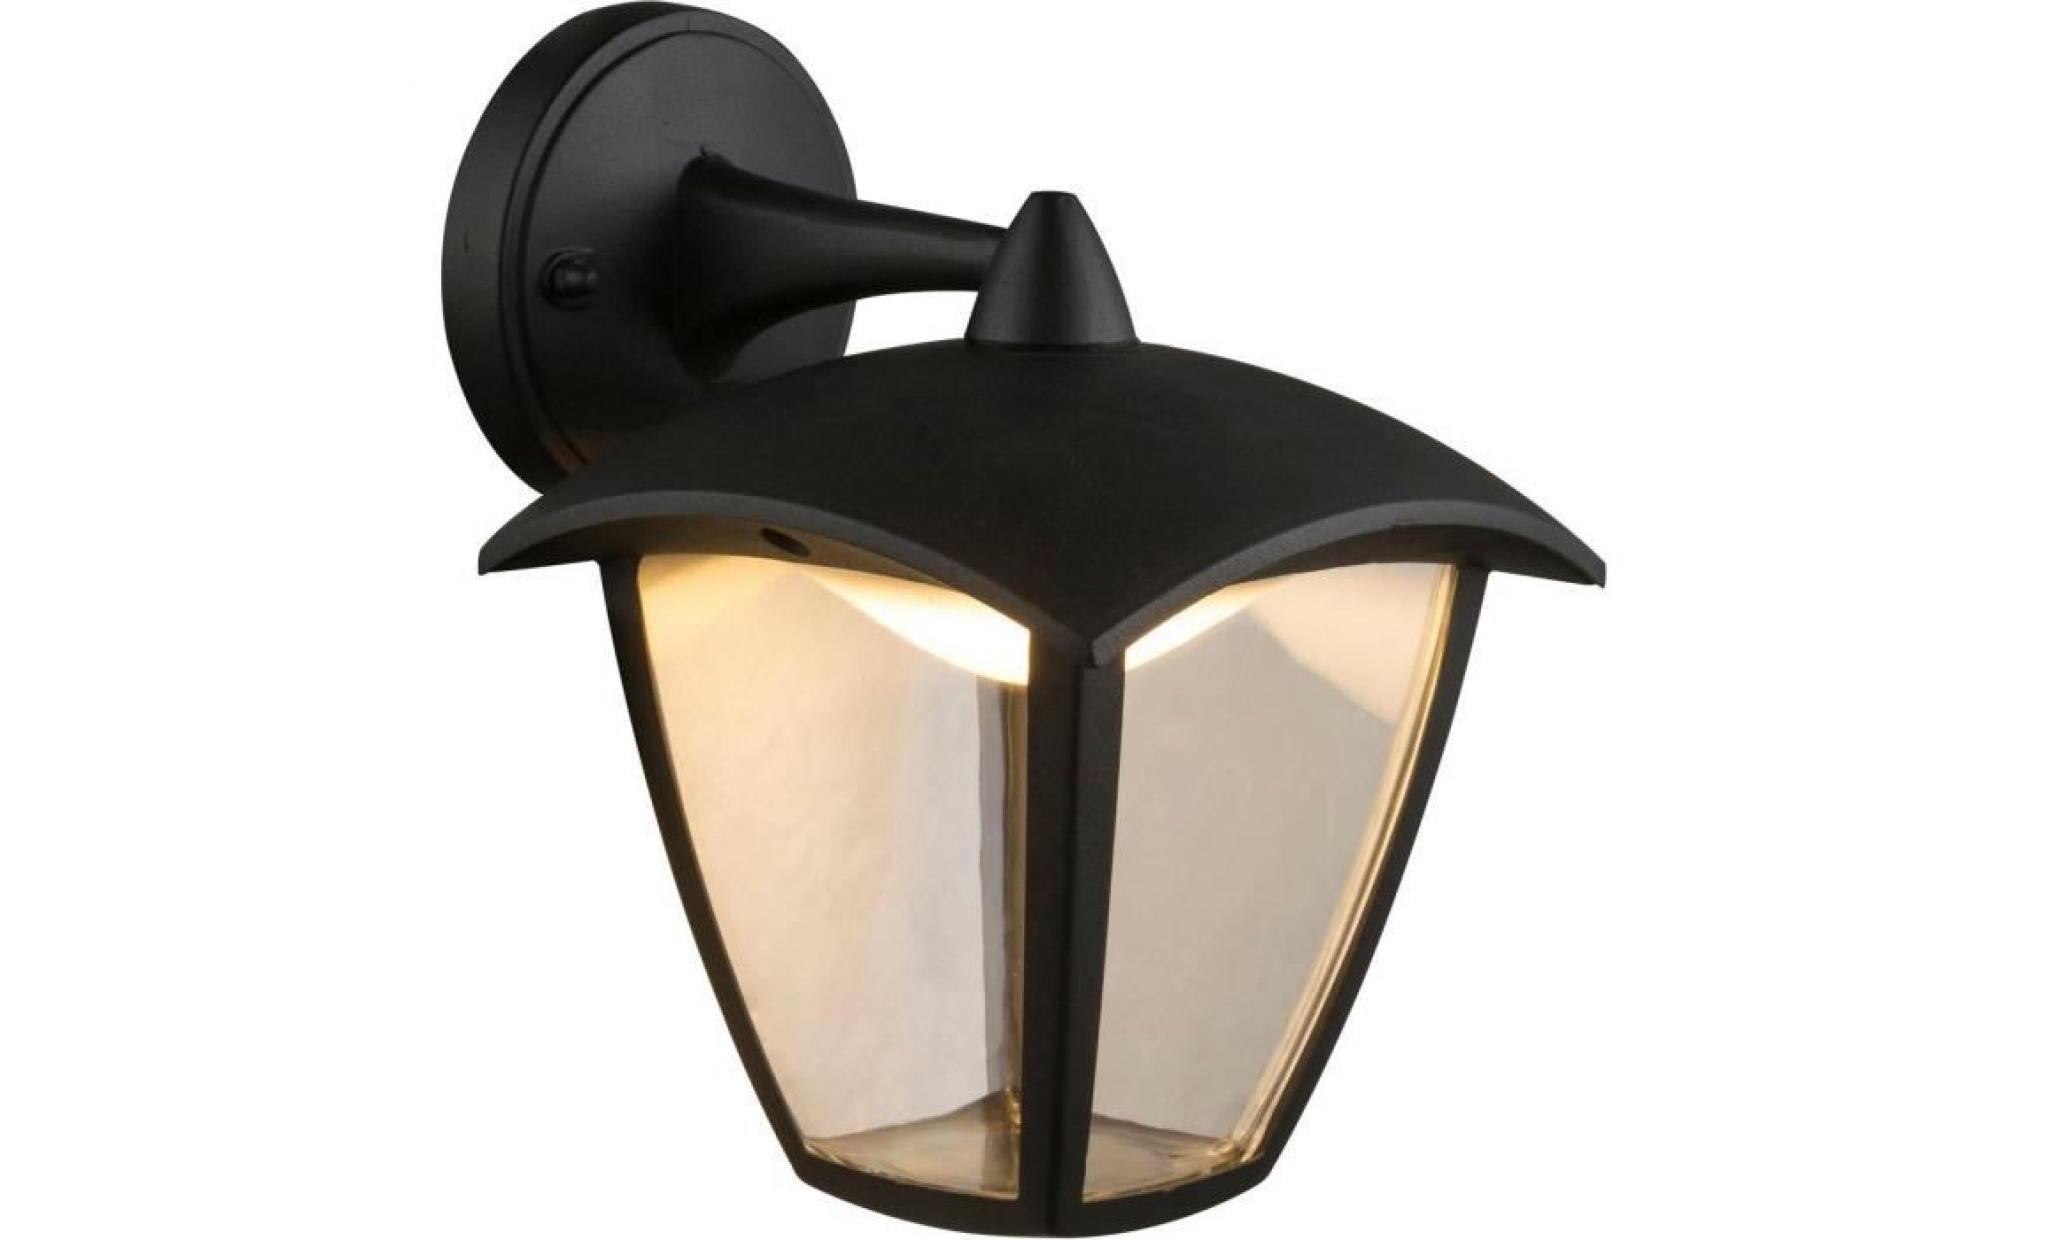 applique extérieur lanterne moderne led delio noire en aluminium kw170101